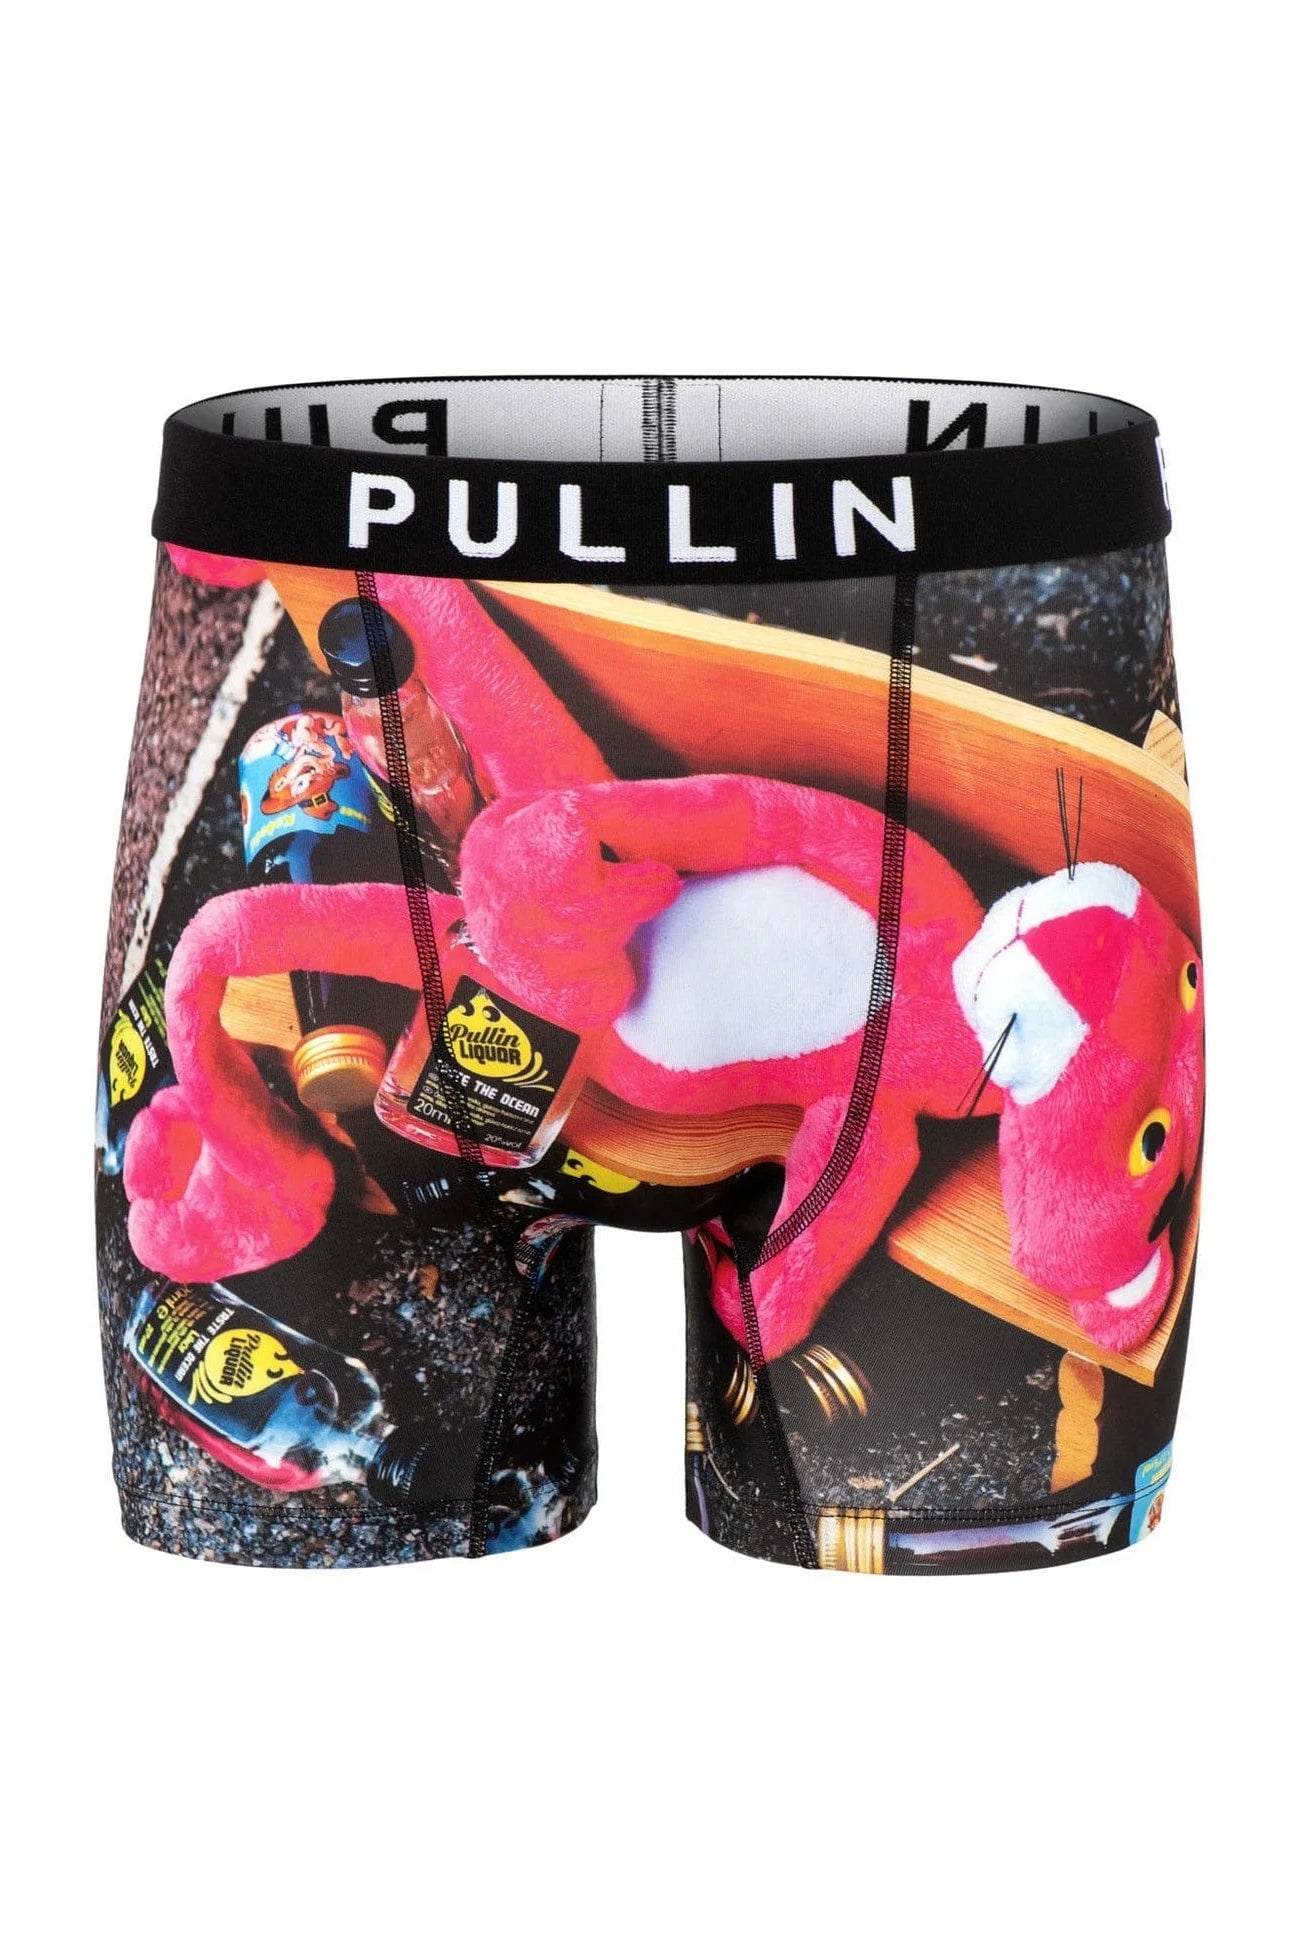 Boutique Option-Pullin Underwear in Red color (Pull-Fa2-Hotcocoa)